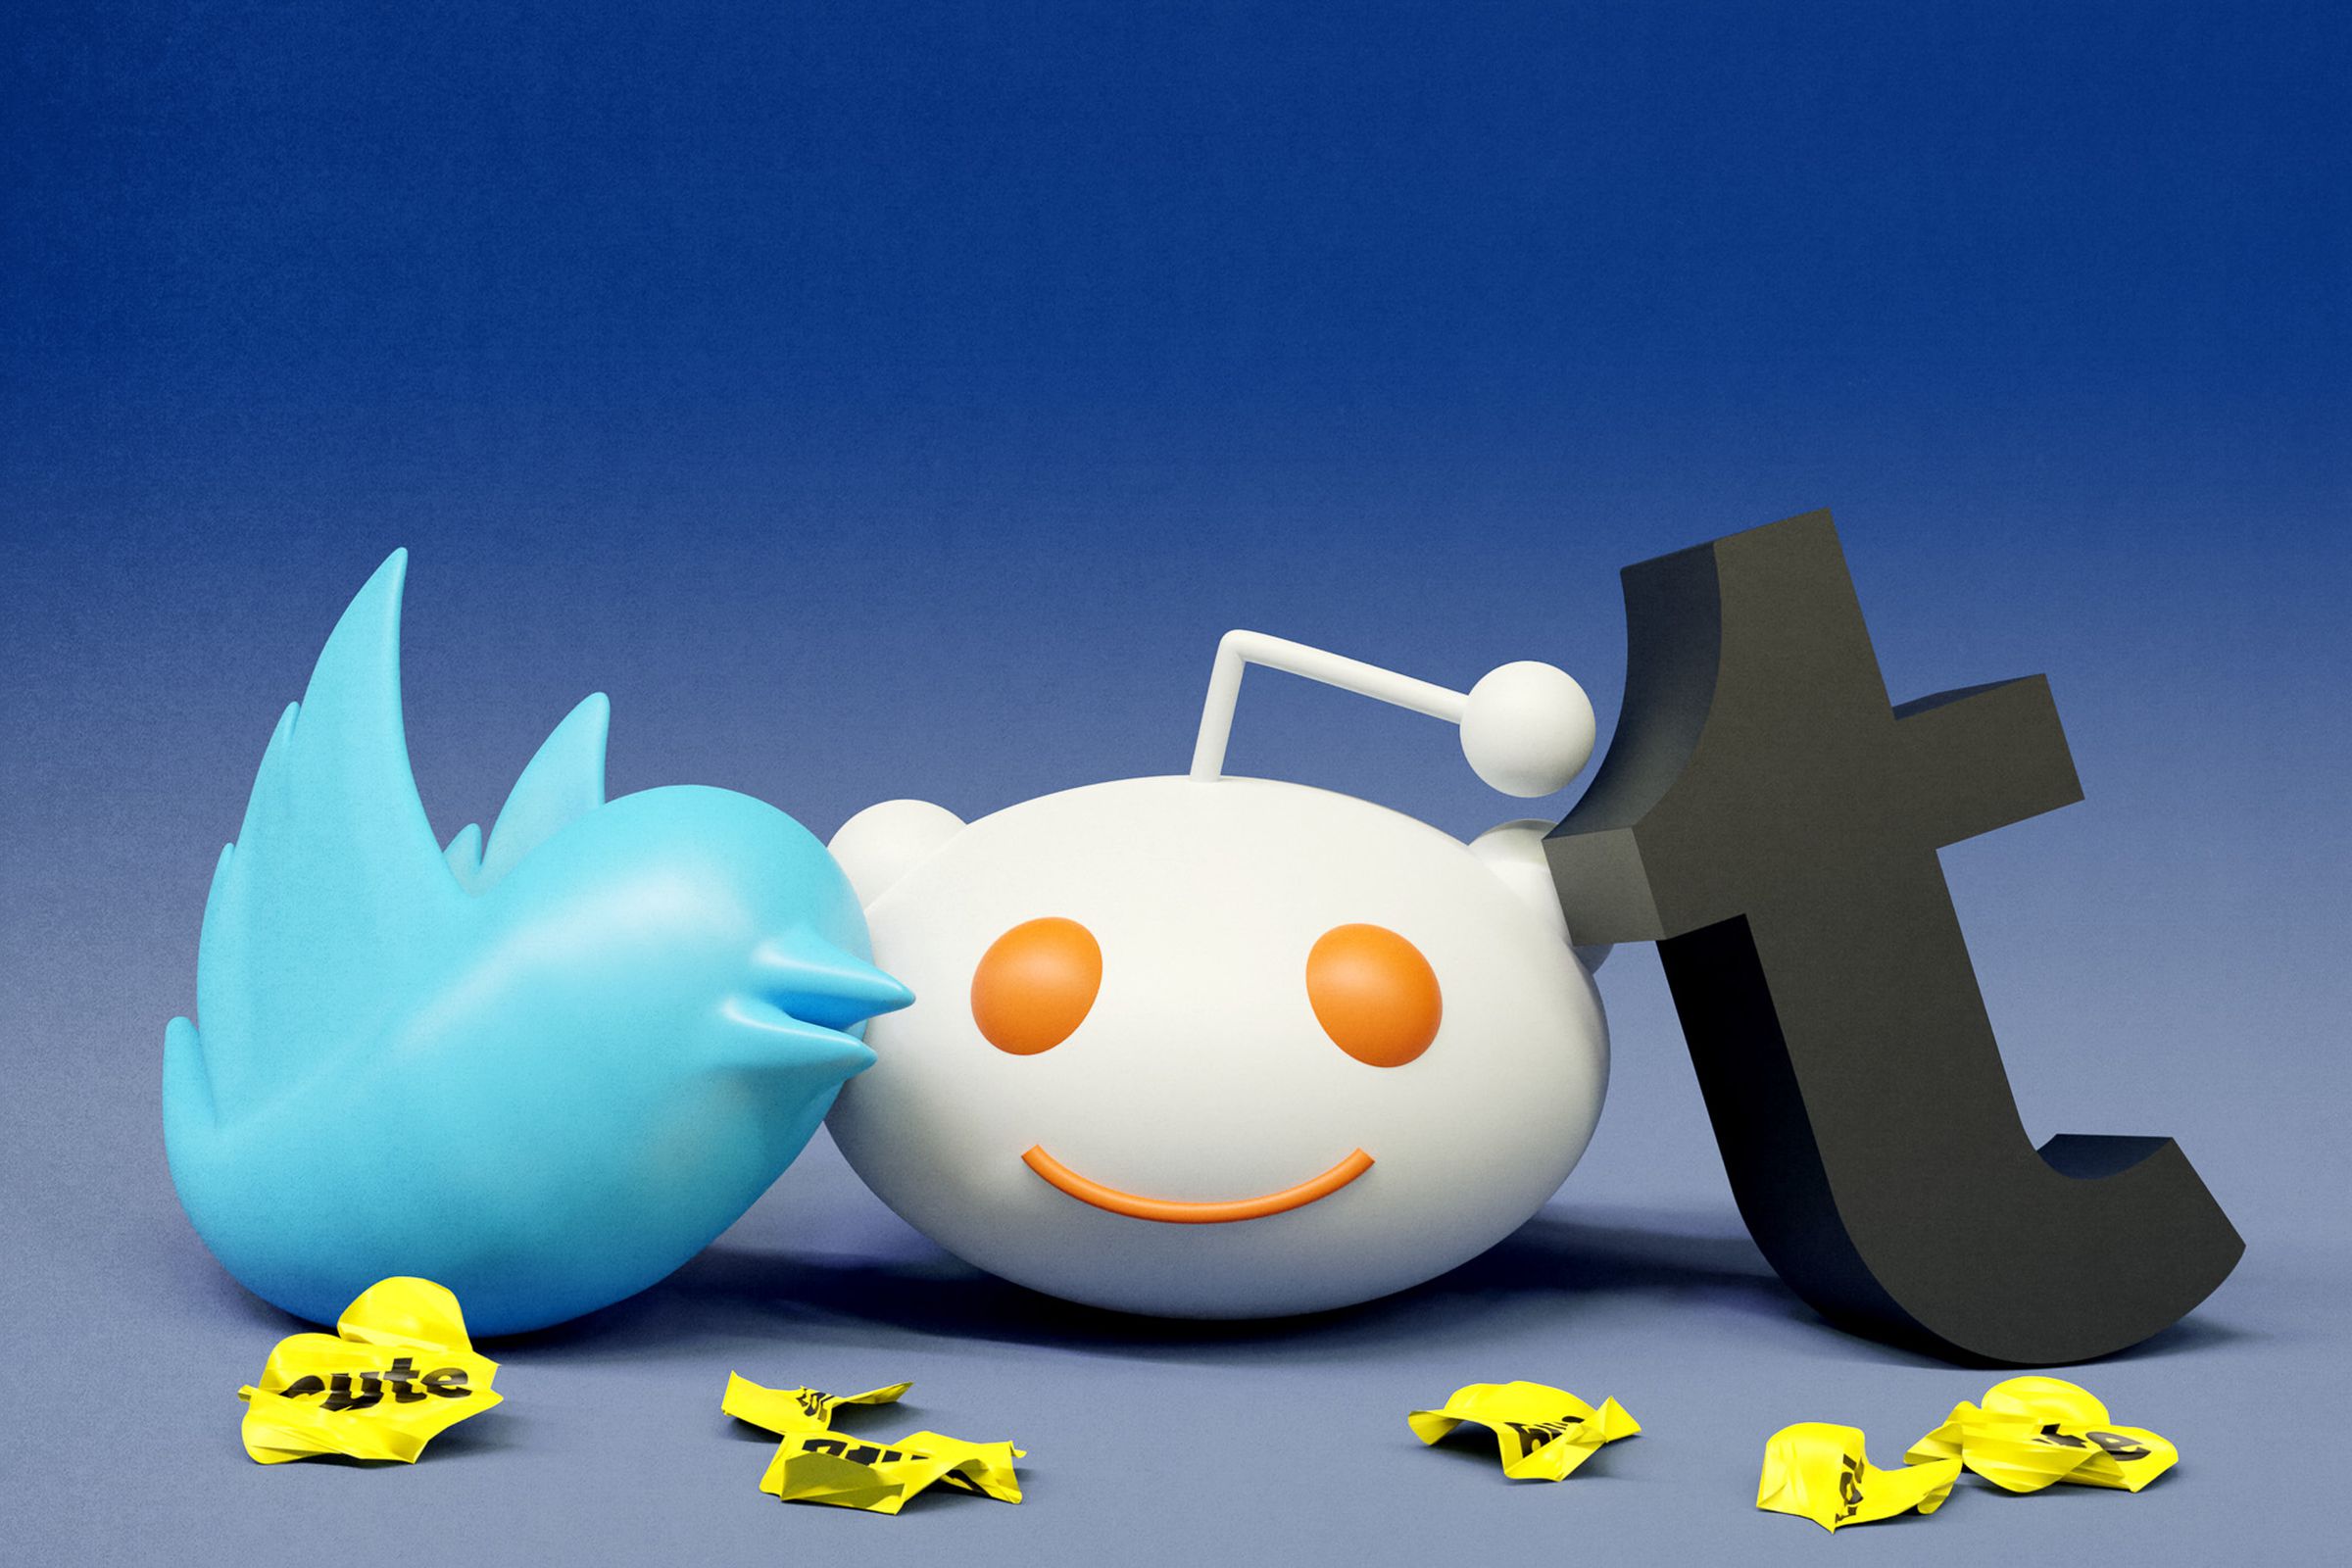 Twitter kuş simgesinin, Reddit uzaylı simgesinin ve yere saçılmış birkaç küçük ufalanmış sarı çıkartmanın yanında Tumble "T" logosunun 3B versiyonları.